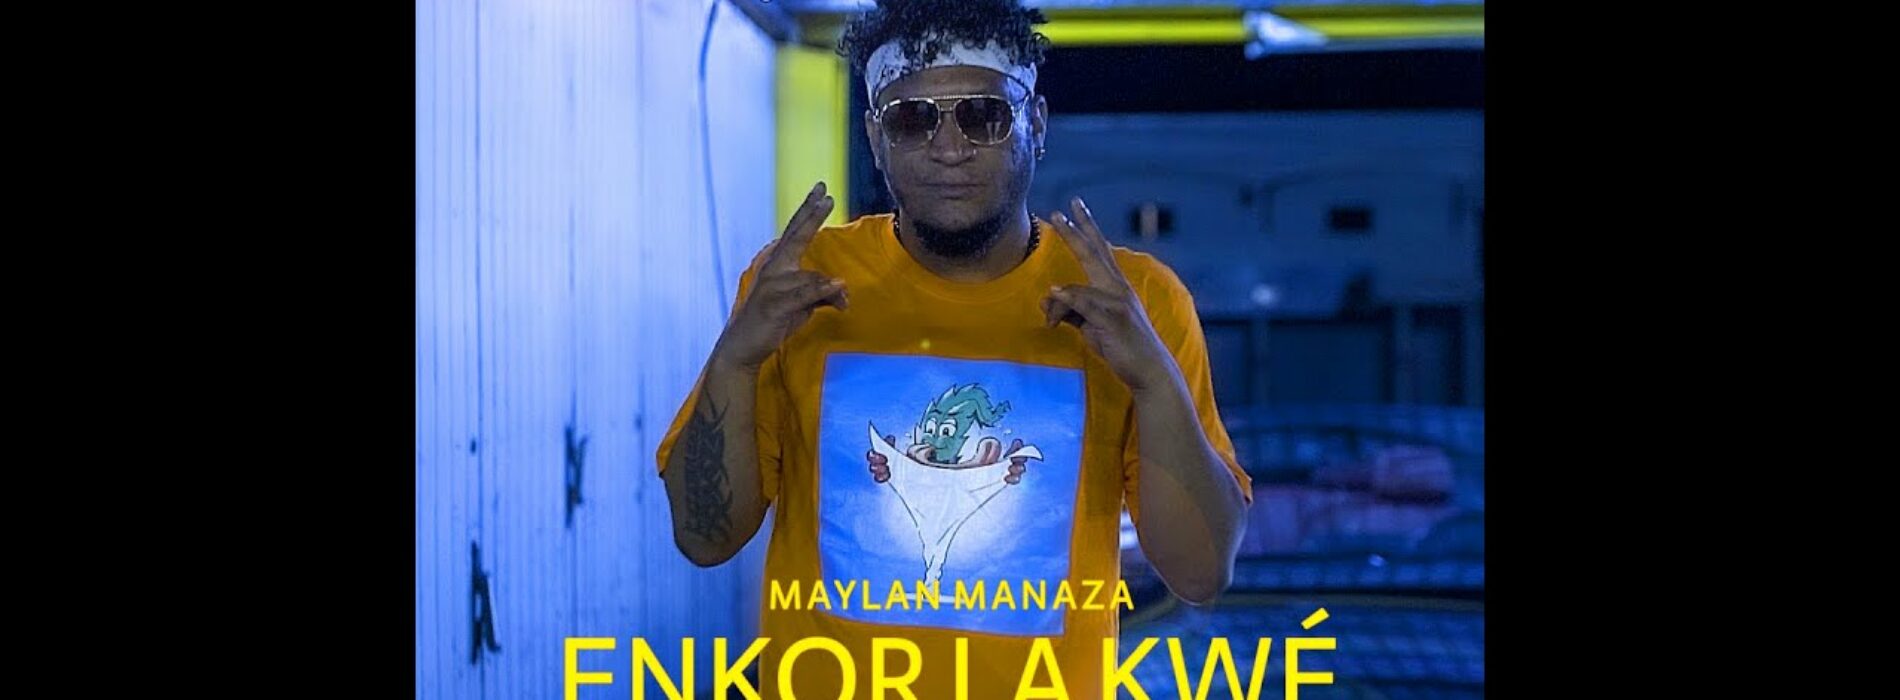 Maylan Manaza feat DJ Kayron #ENKORLAKWÉ  – Janvier 2021